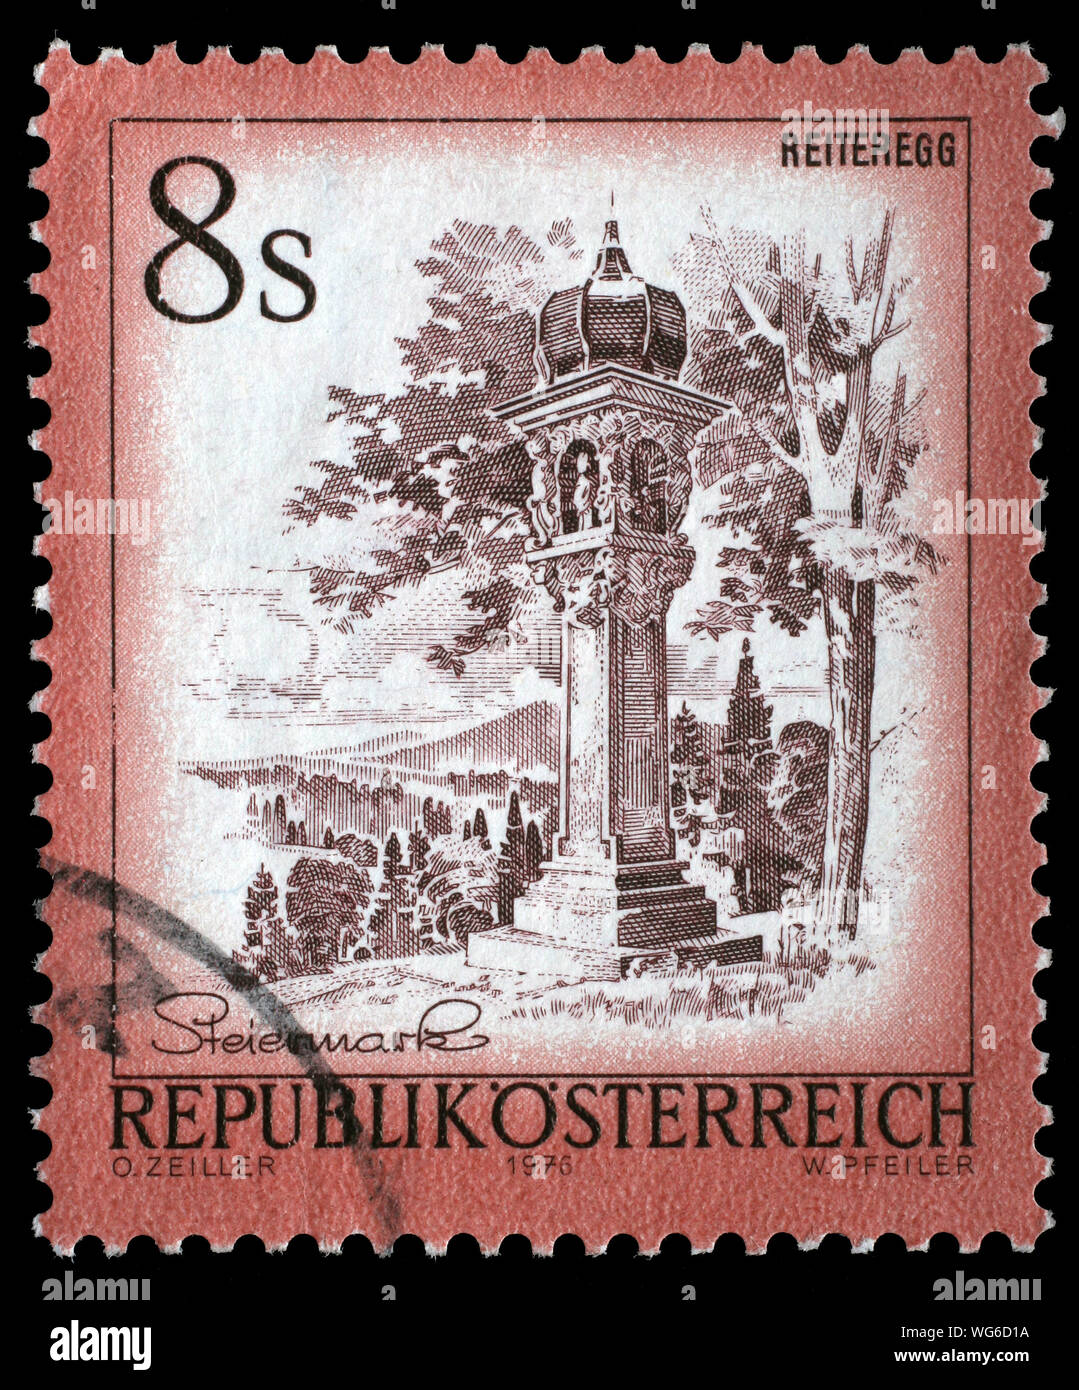 Stempel gedruckt in Österreich zeigt Reiteregg, aus der serie Ugregelung in Österreich", ca. 1973. Stockfoto